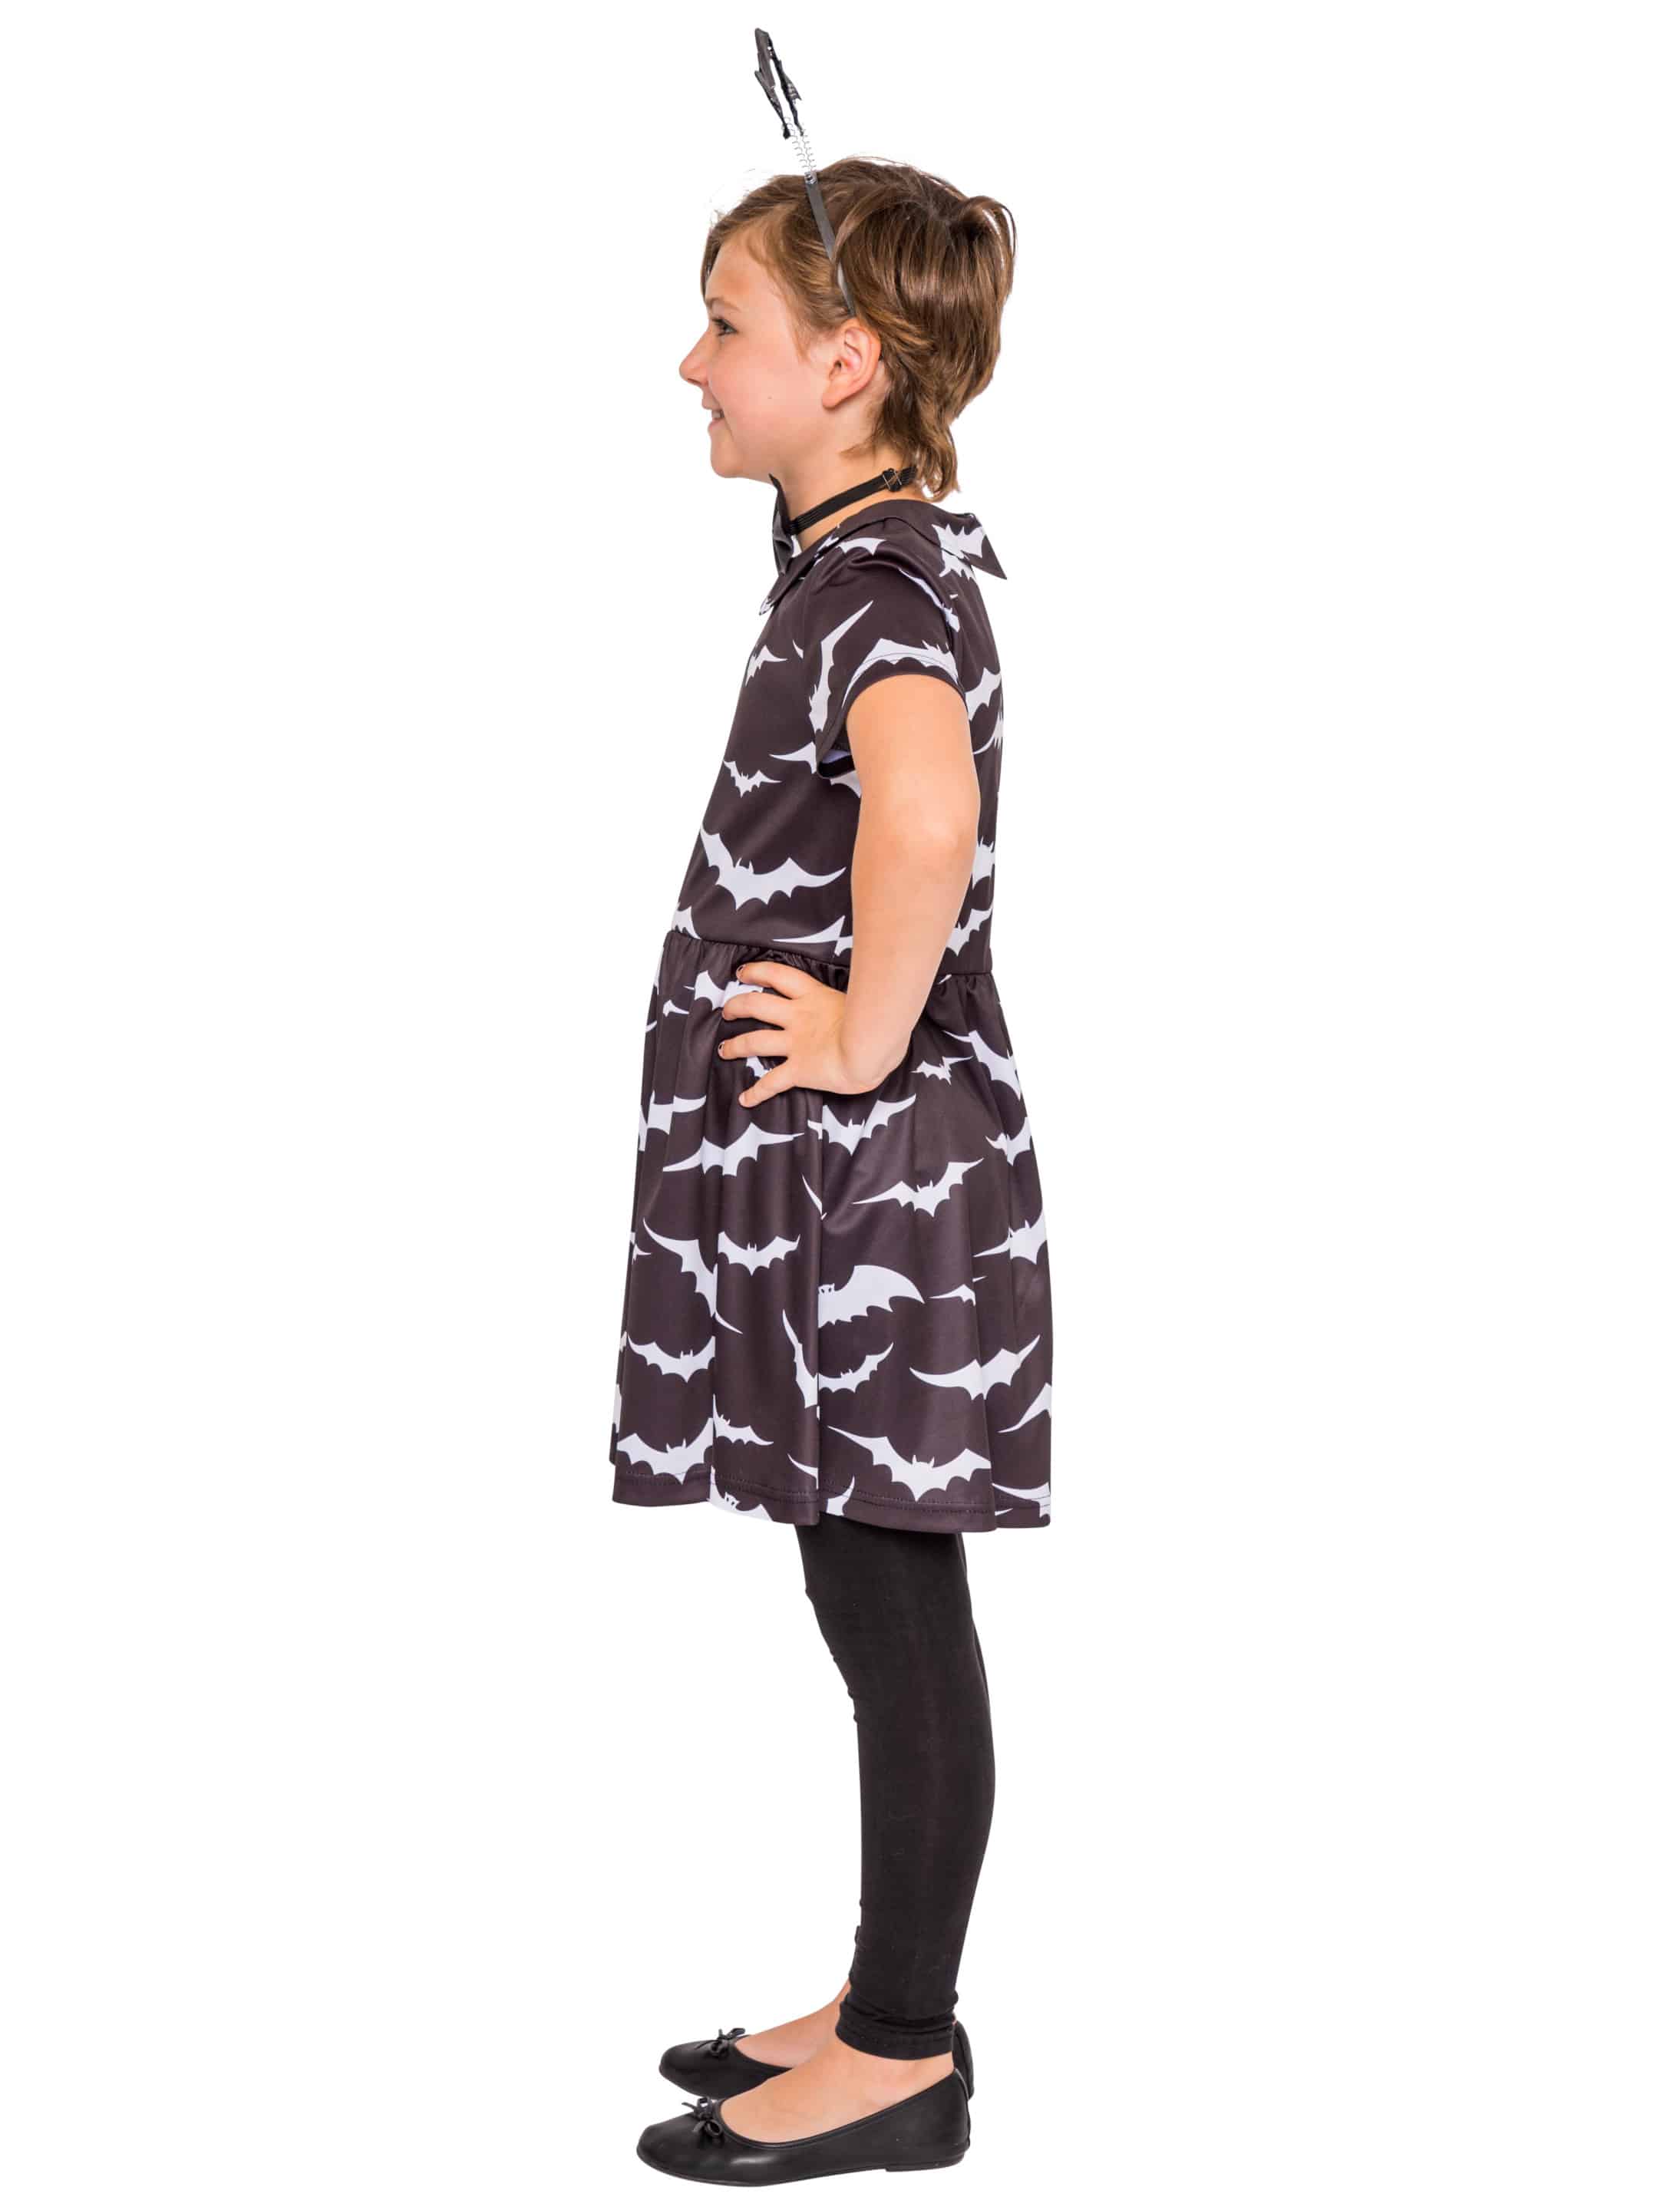 Kleid Fledermaus Kinder Mädchen schwarz/weiß 116